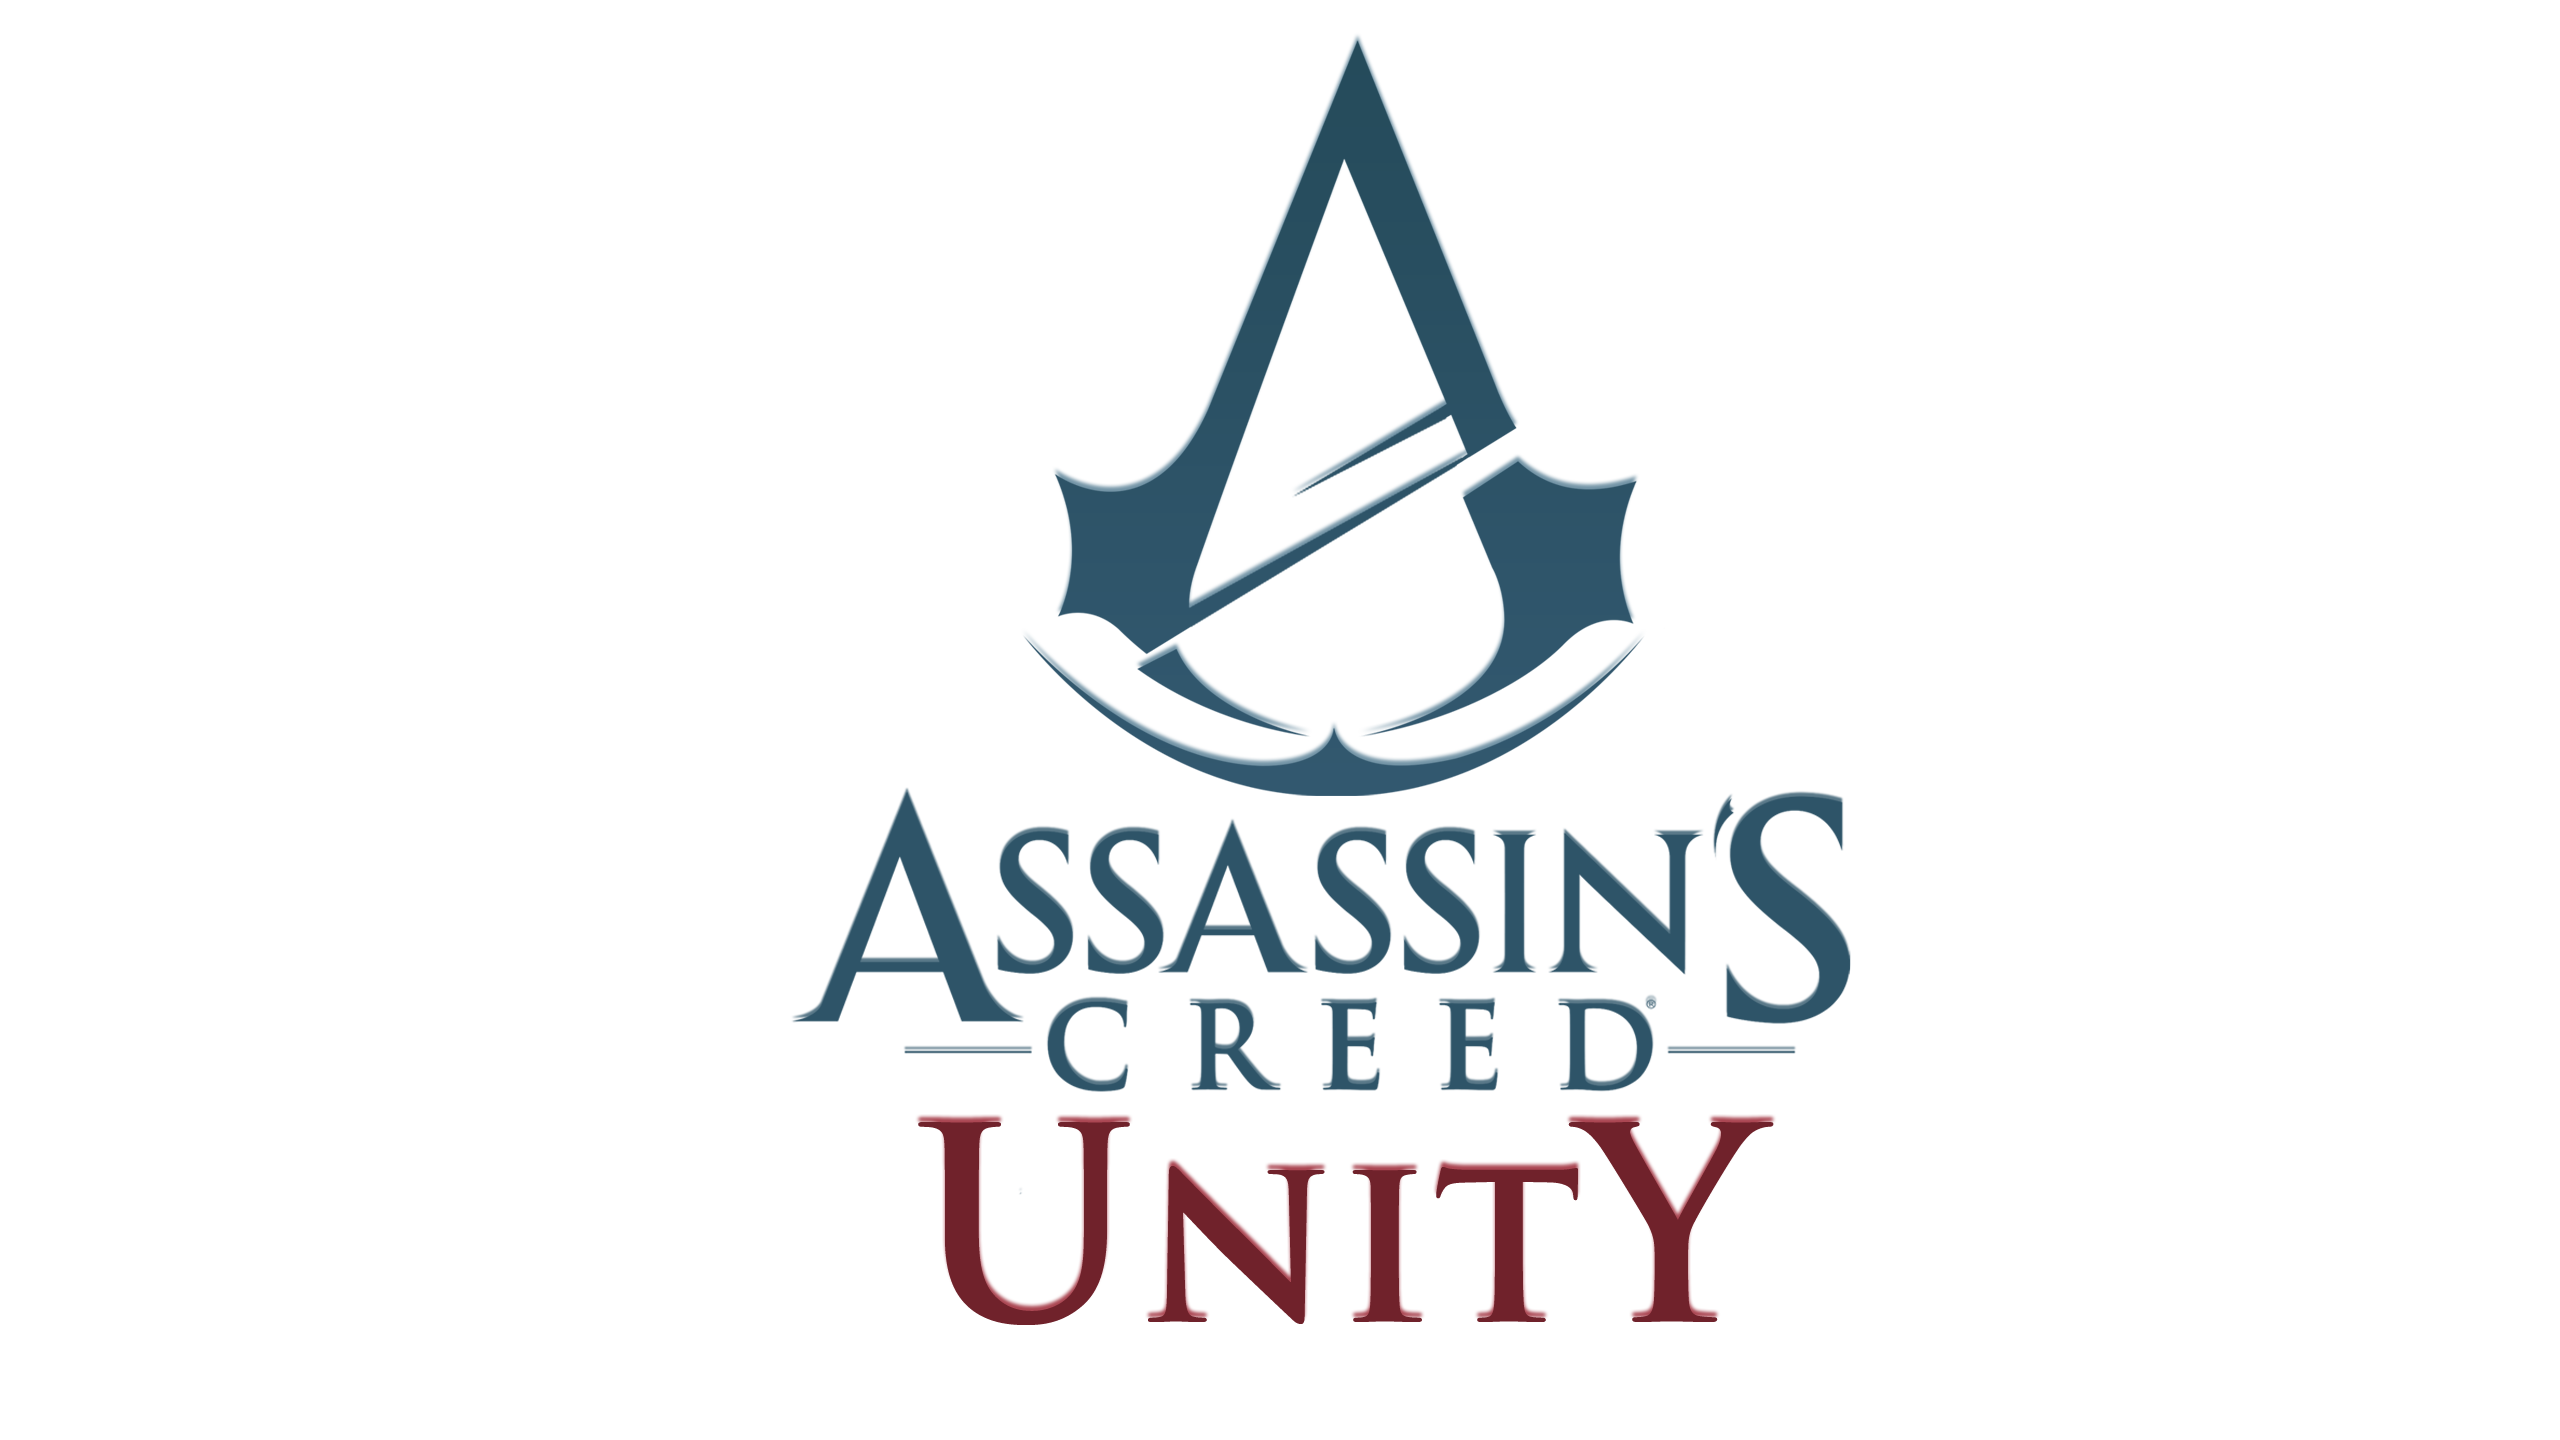 Assassin’s Creed: Unity: “Impossibile da realizzare su PS3 e Xbxo 360”